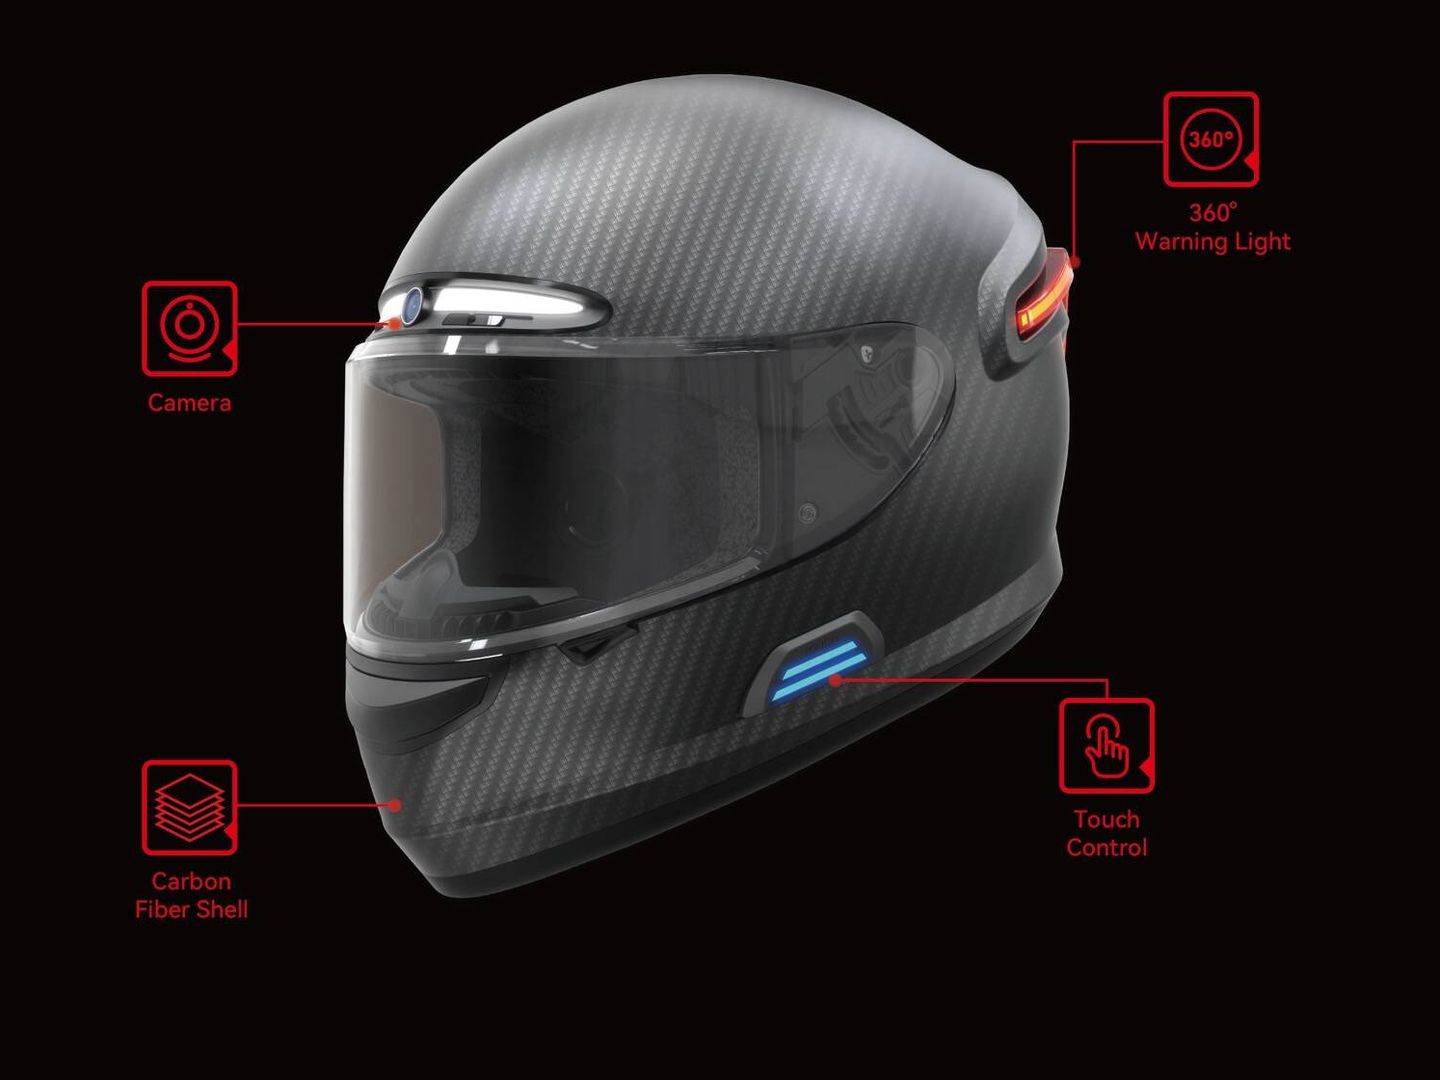 El casco tiene ópticas delante y detrás, y un botón de control; y pronto llega un modelo con cámara 4K.